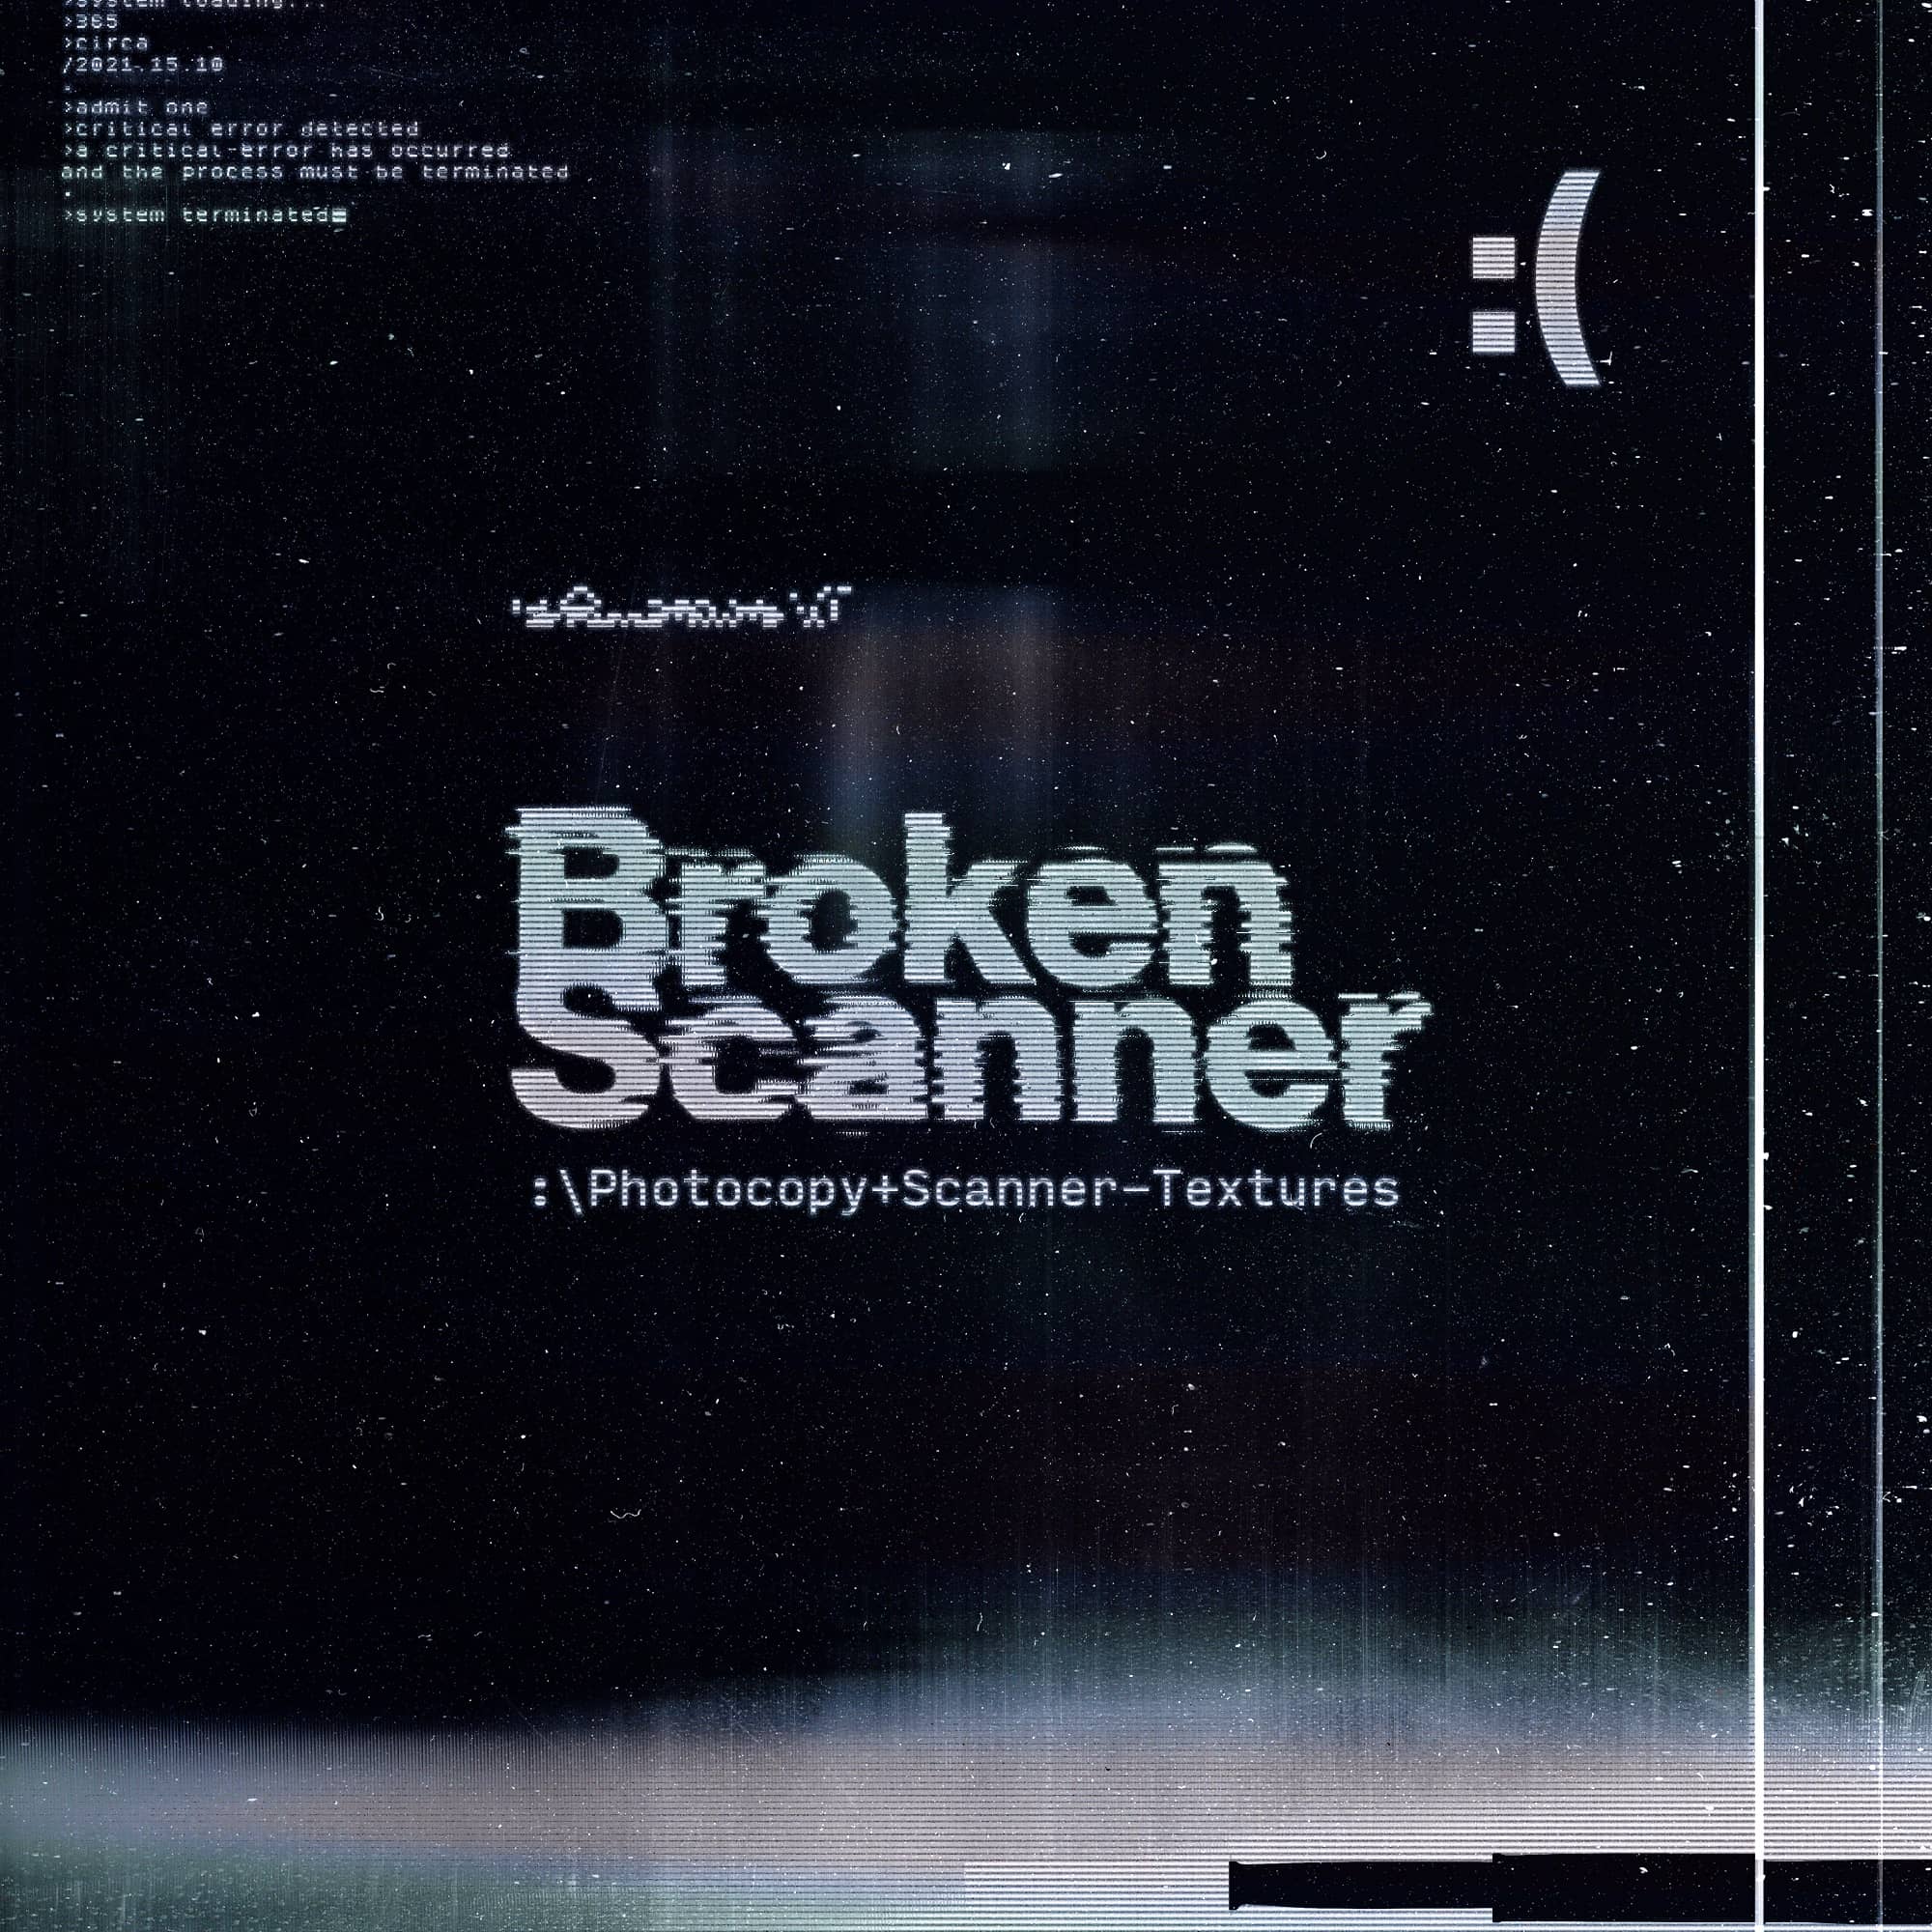 Broken-Scanner_01